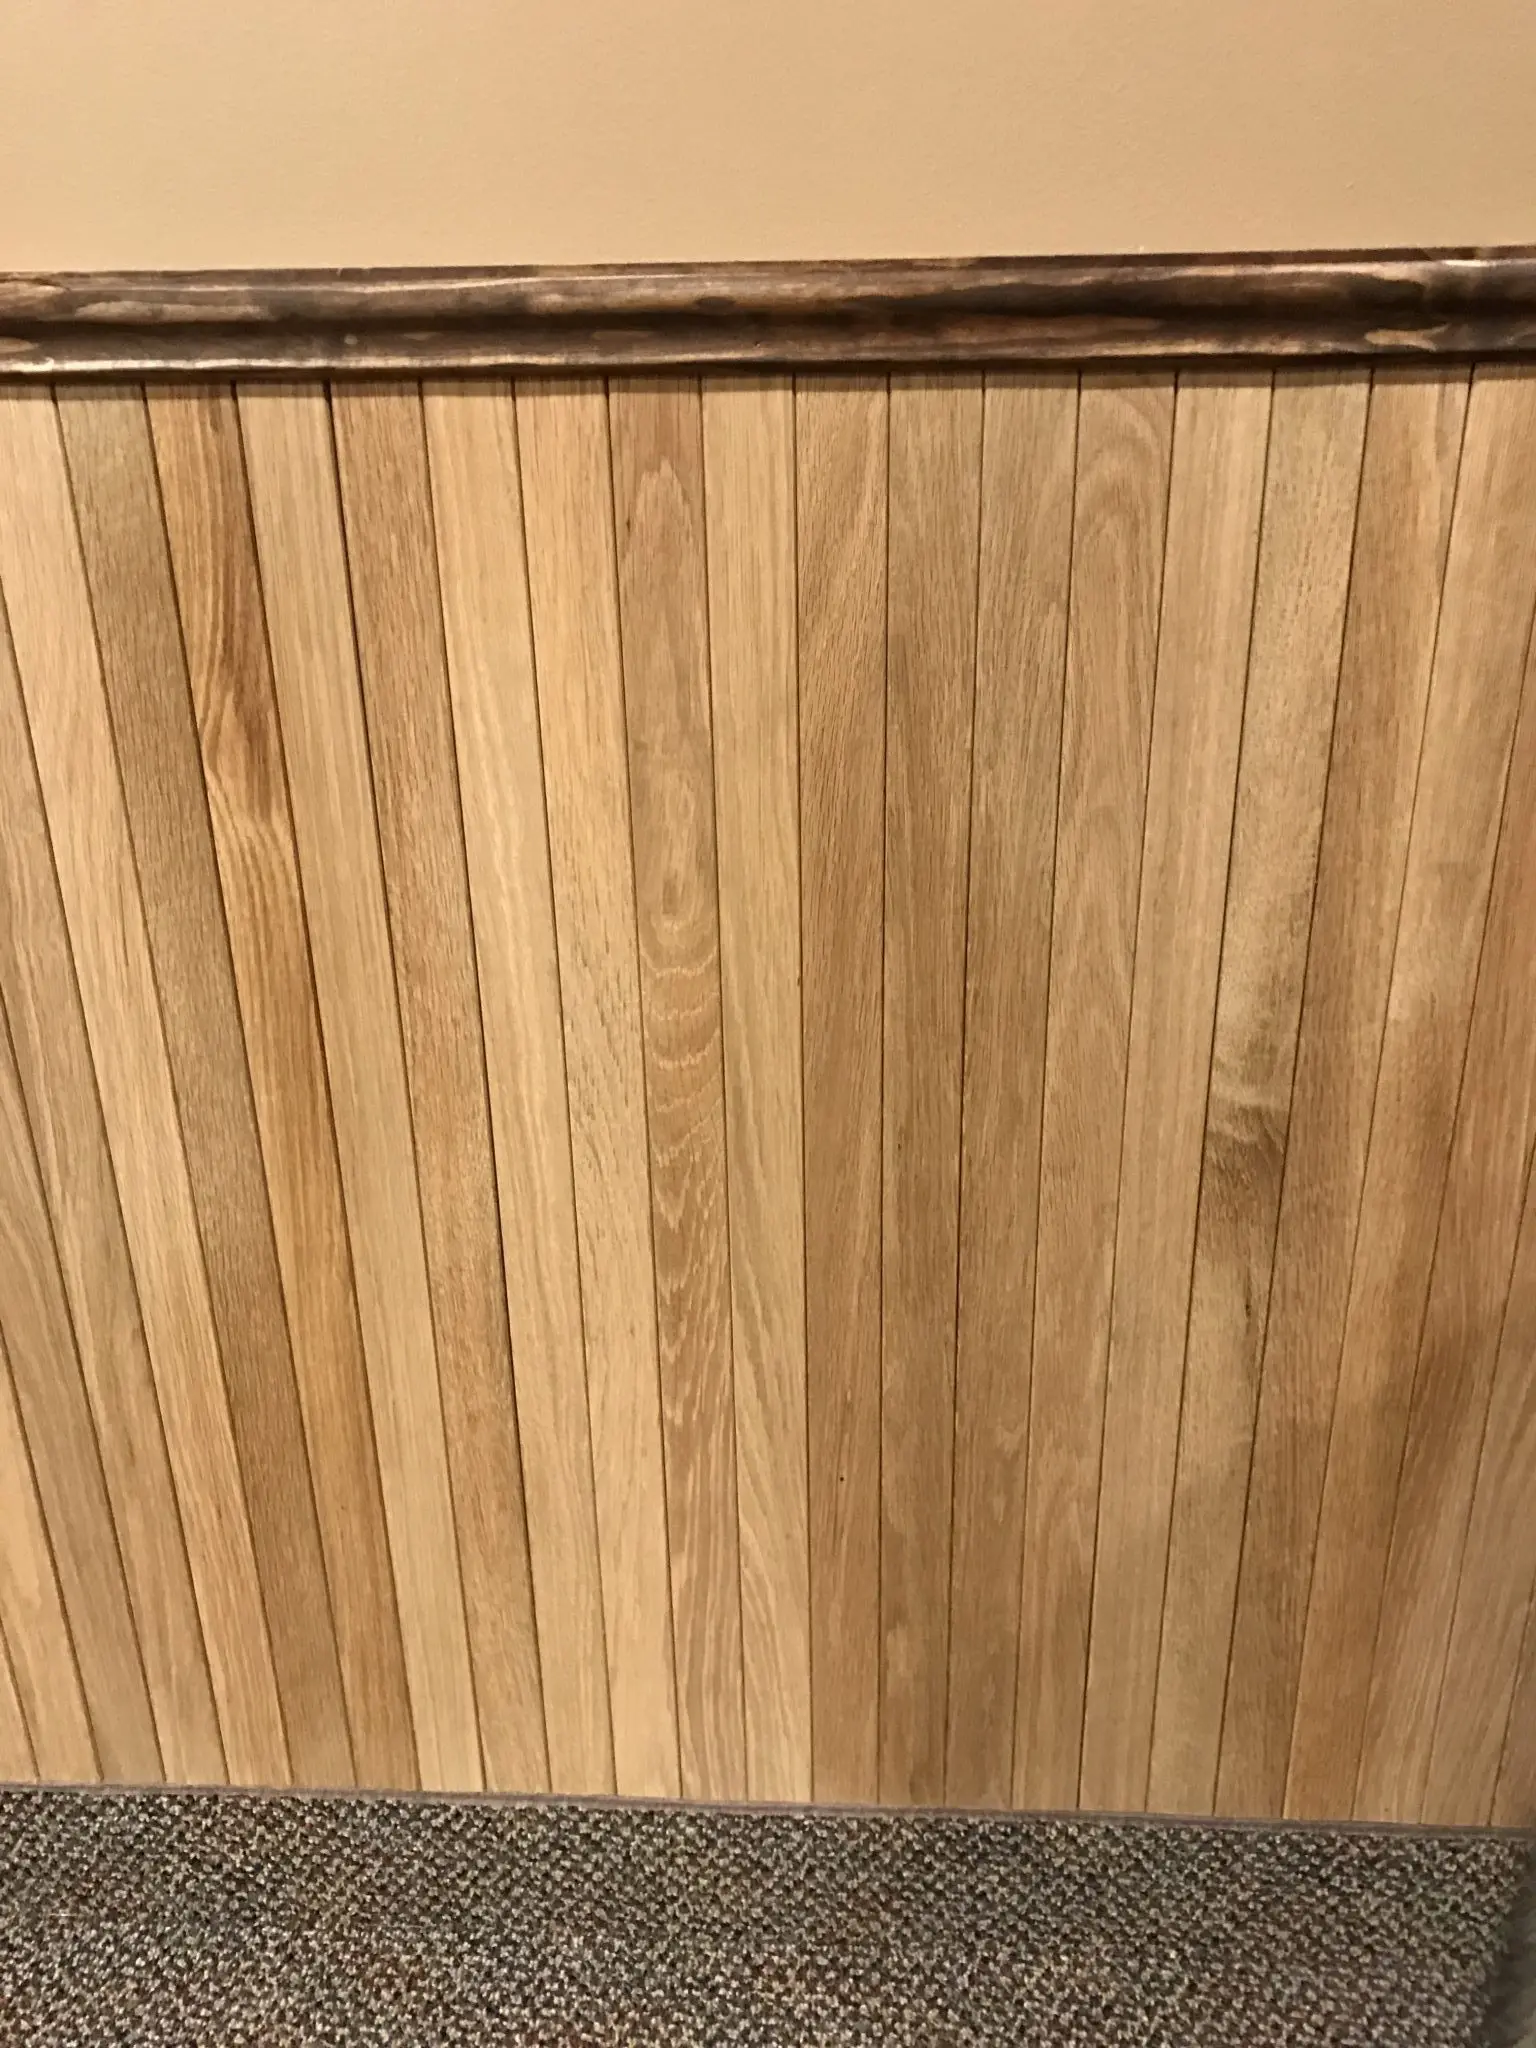 White oak wall paneling wainscot